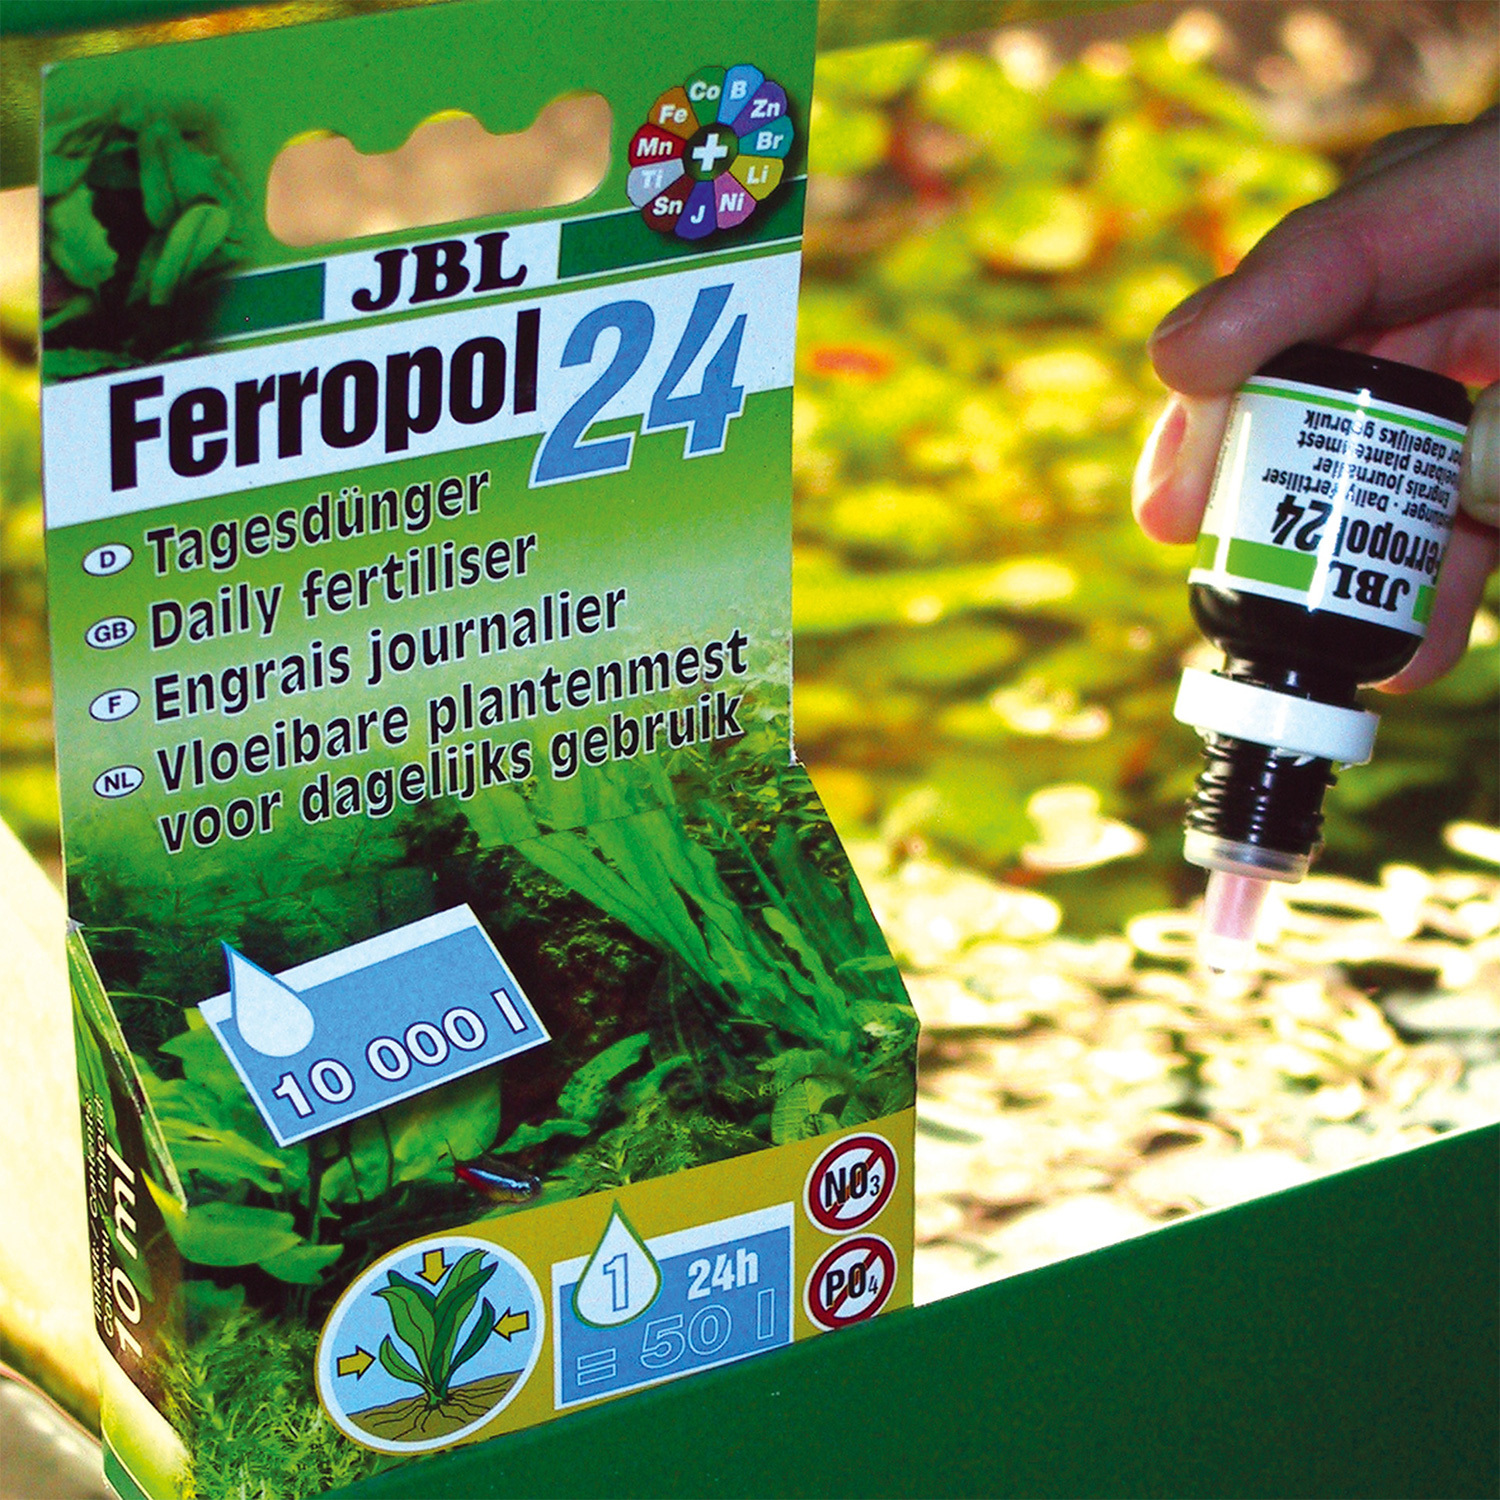 JBL Ferropol 24 fertilizator pentru plante - zoom